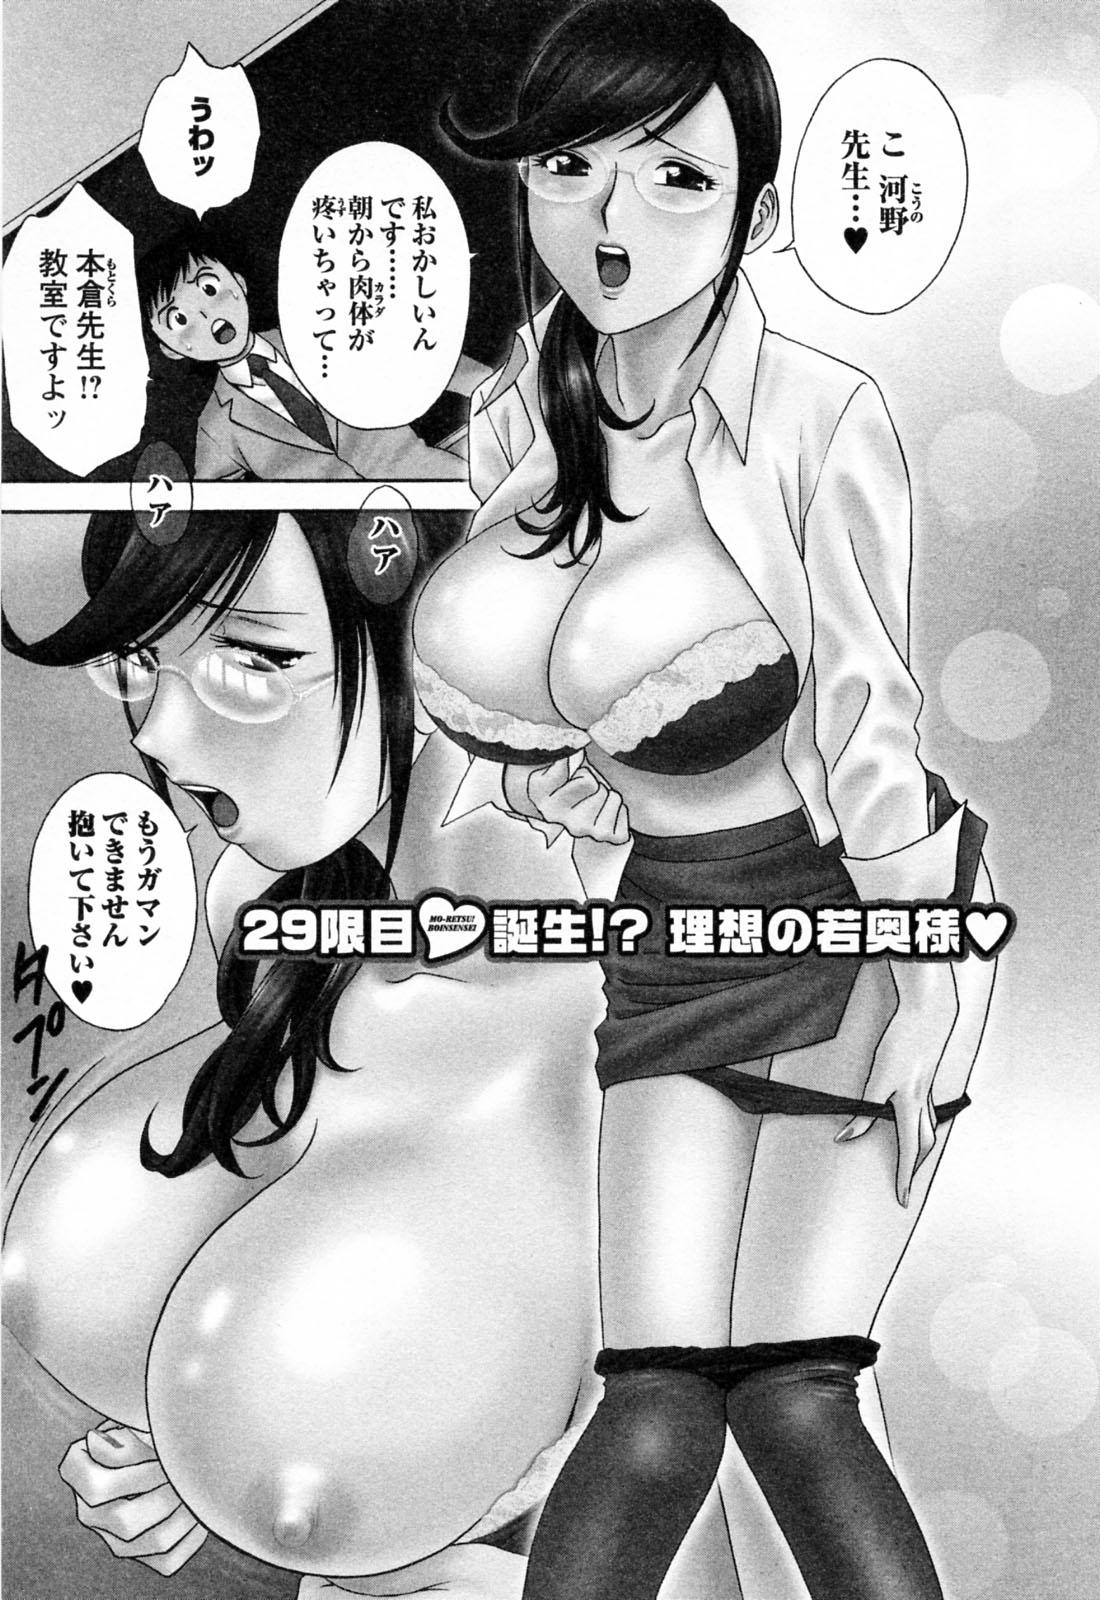 [Hidemaru] Mo-Retsu! Boin Sensei (Boing Boing Teacher) Vol.4 30